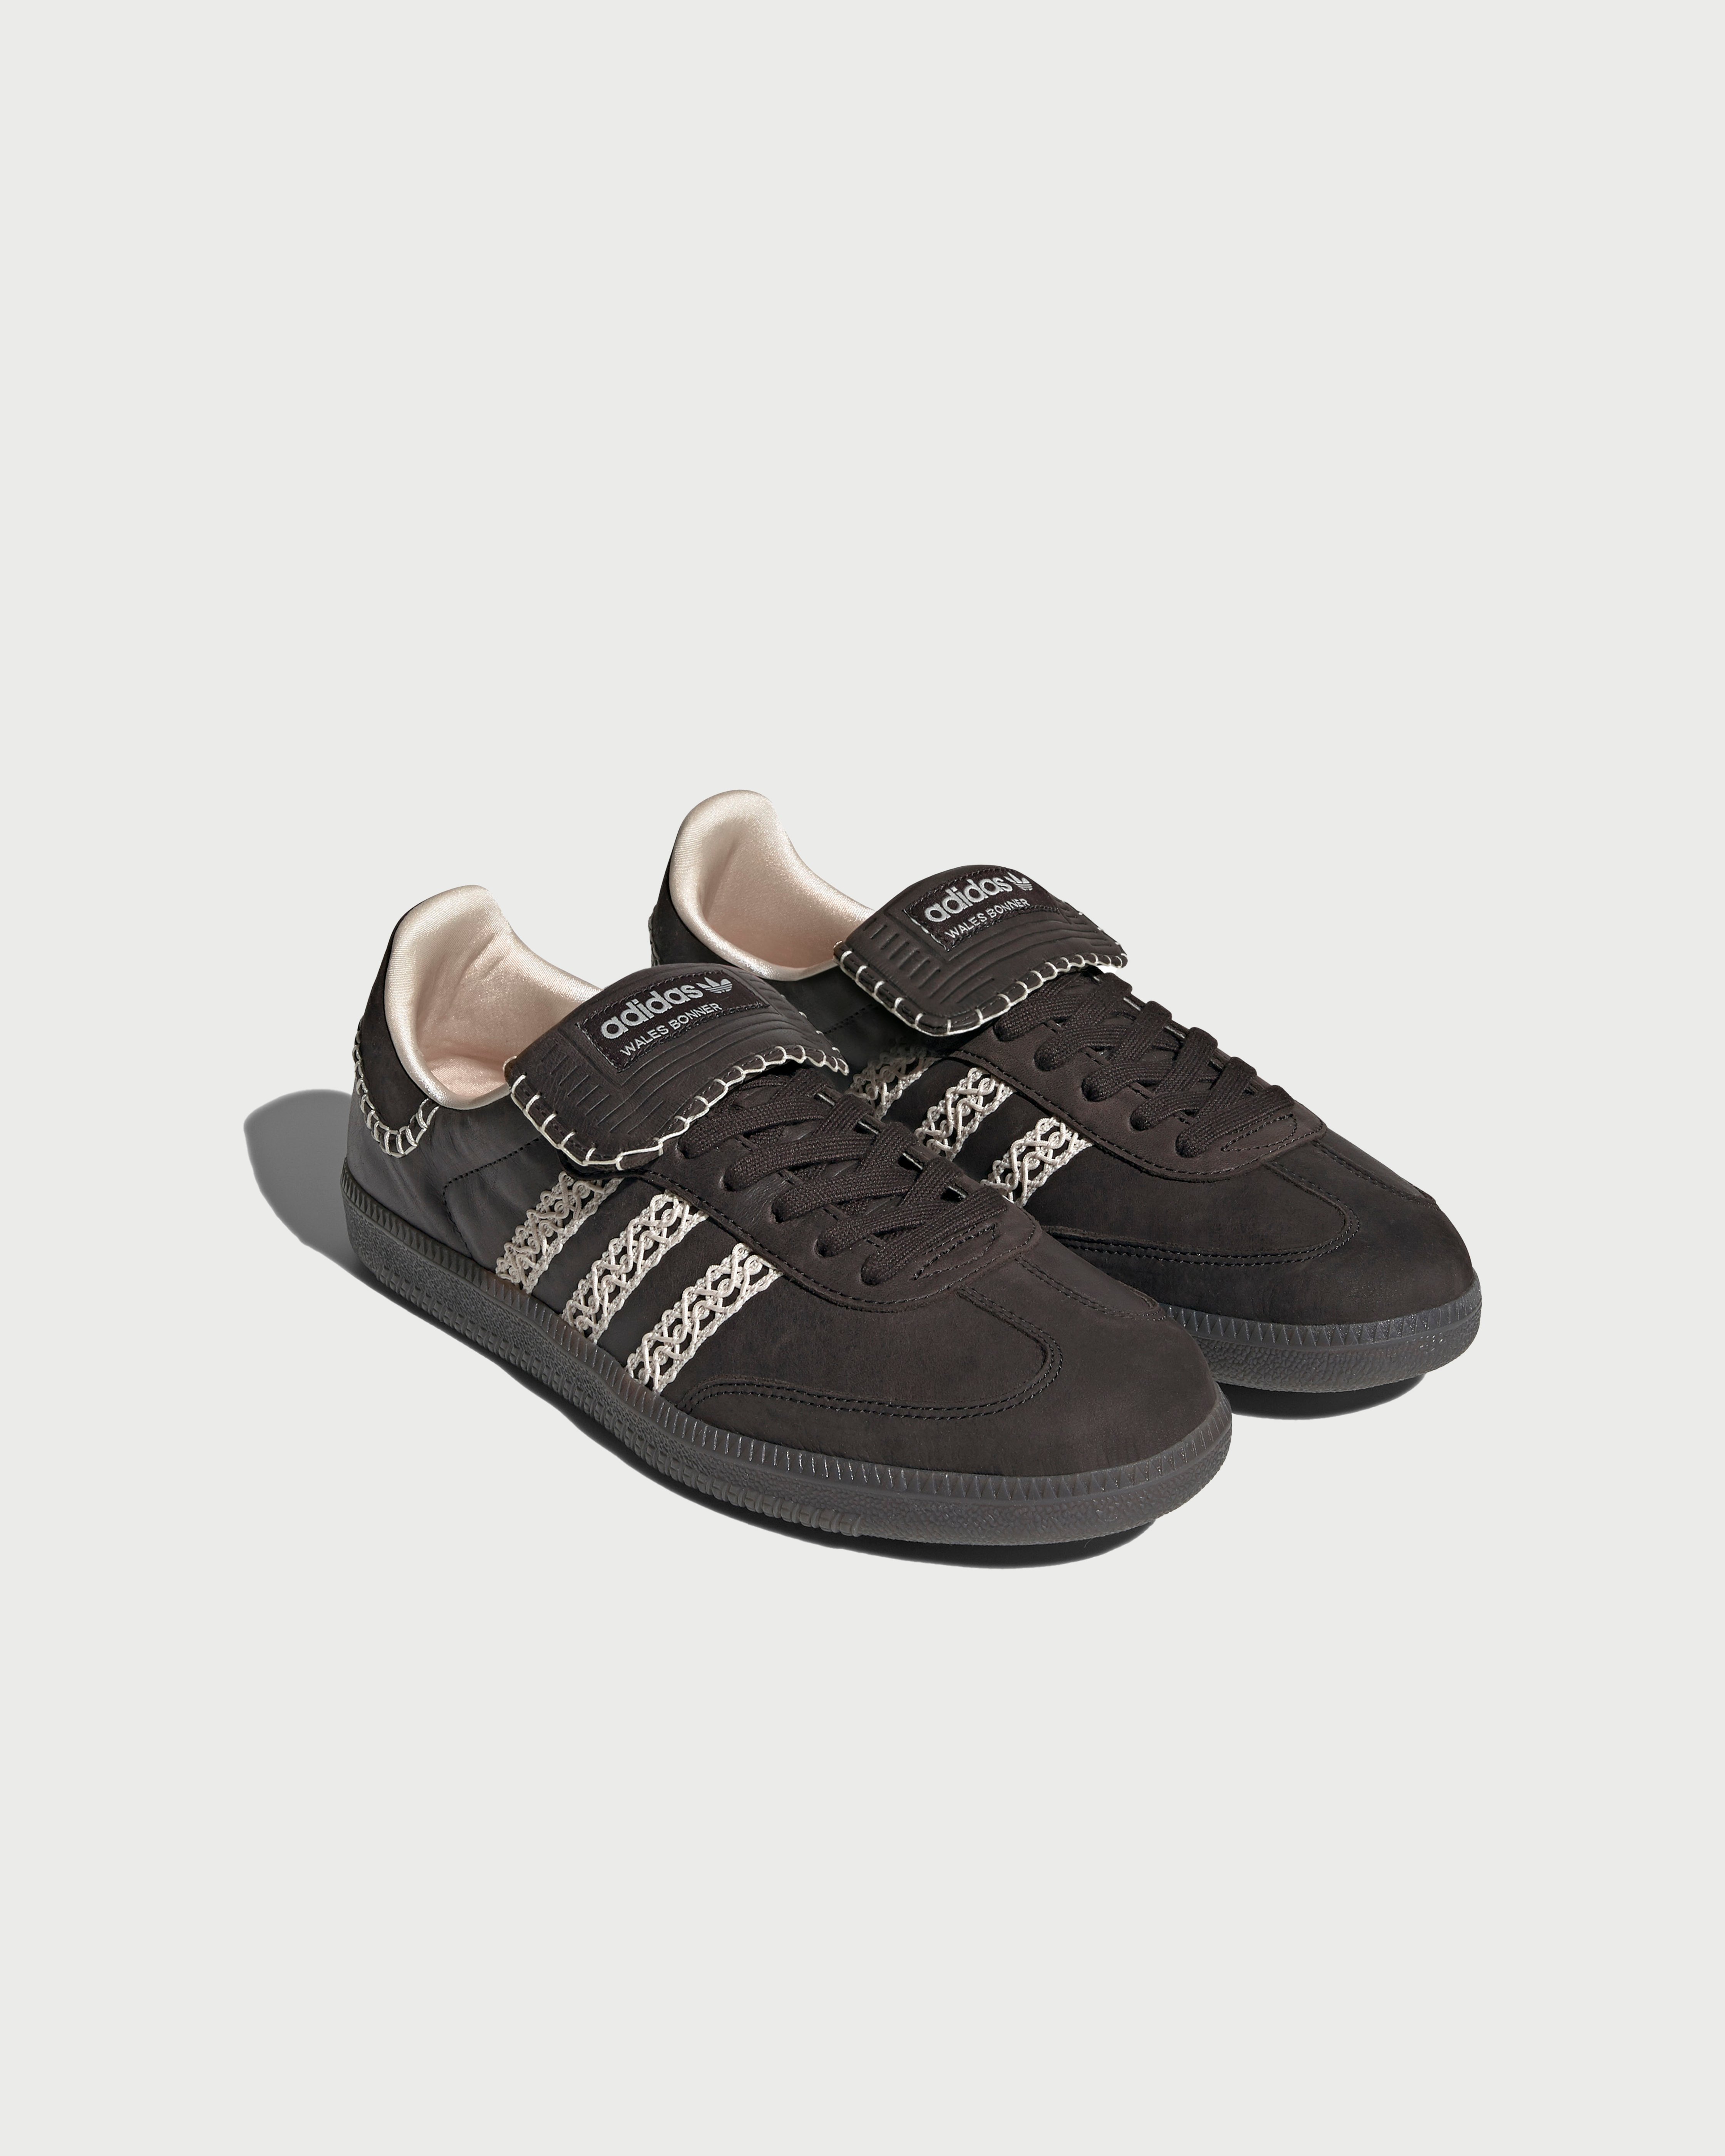 Adidas x Wales Bonner - Samba Black - Footwear - Black - Image 2